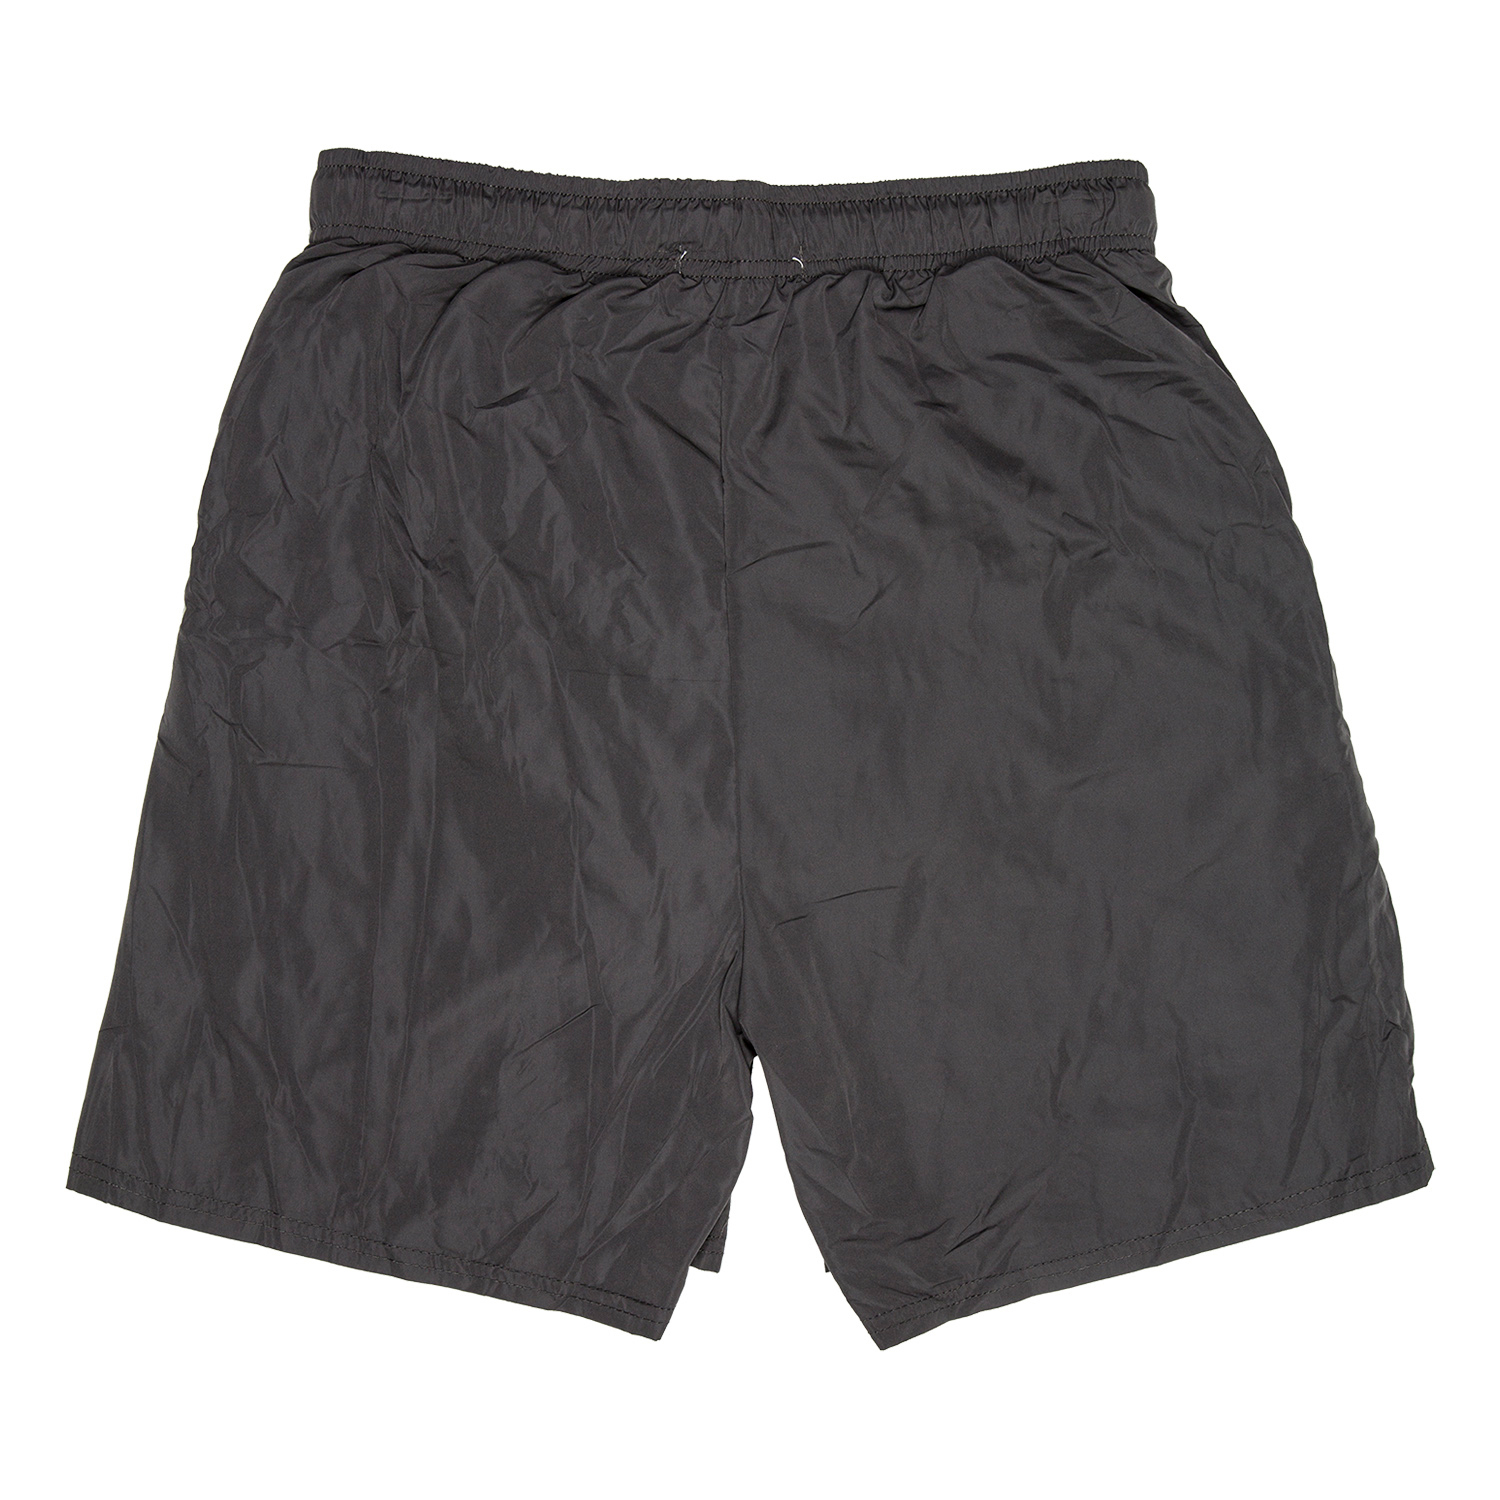 Active Sport Men's Woven Shorts - Black / S Image